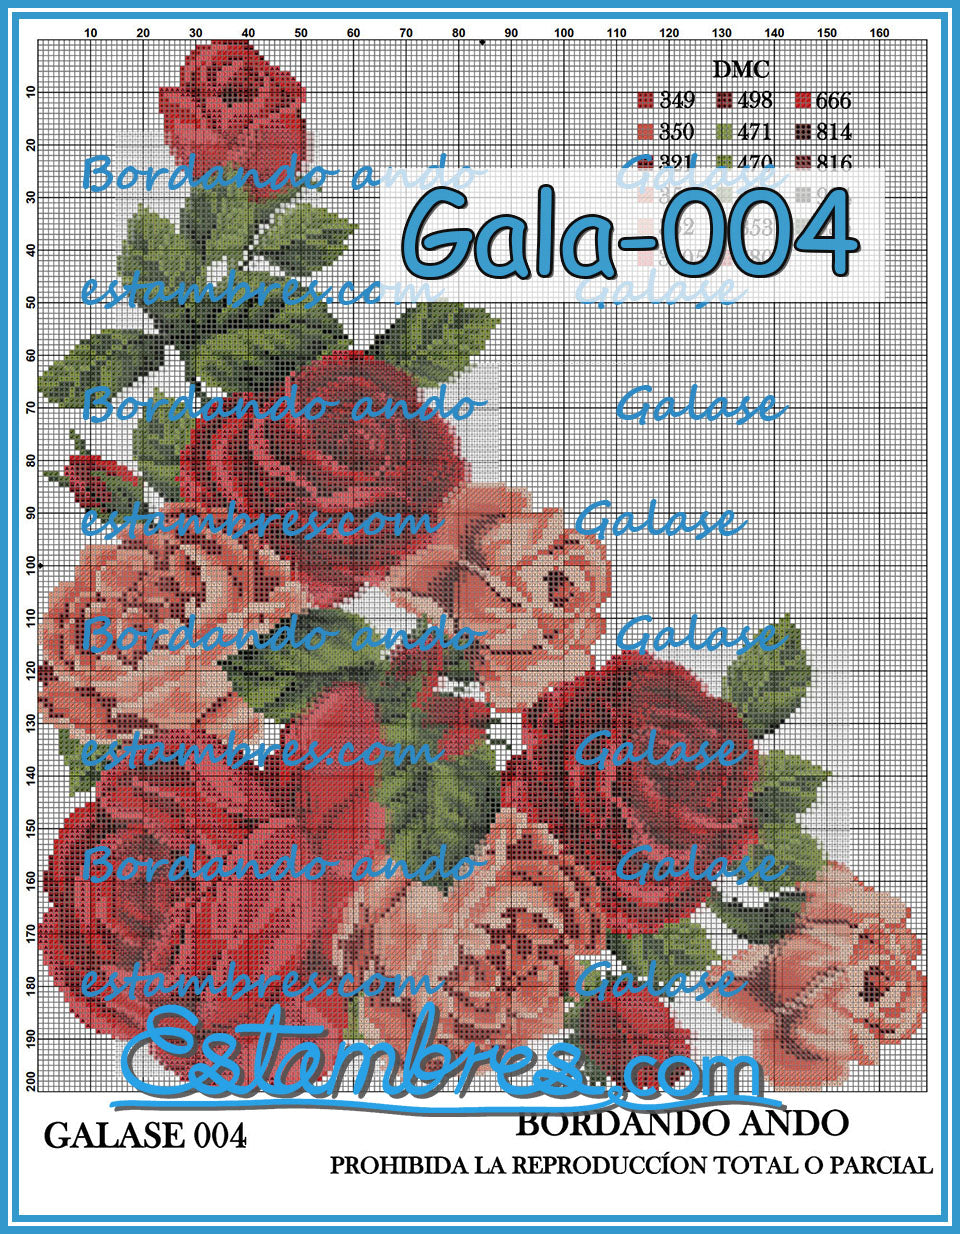 GALASE [001-070] - 1 of 5